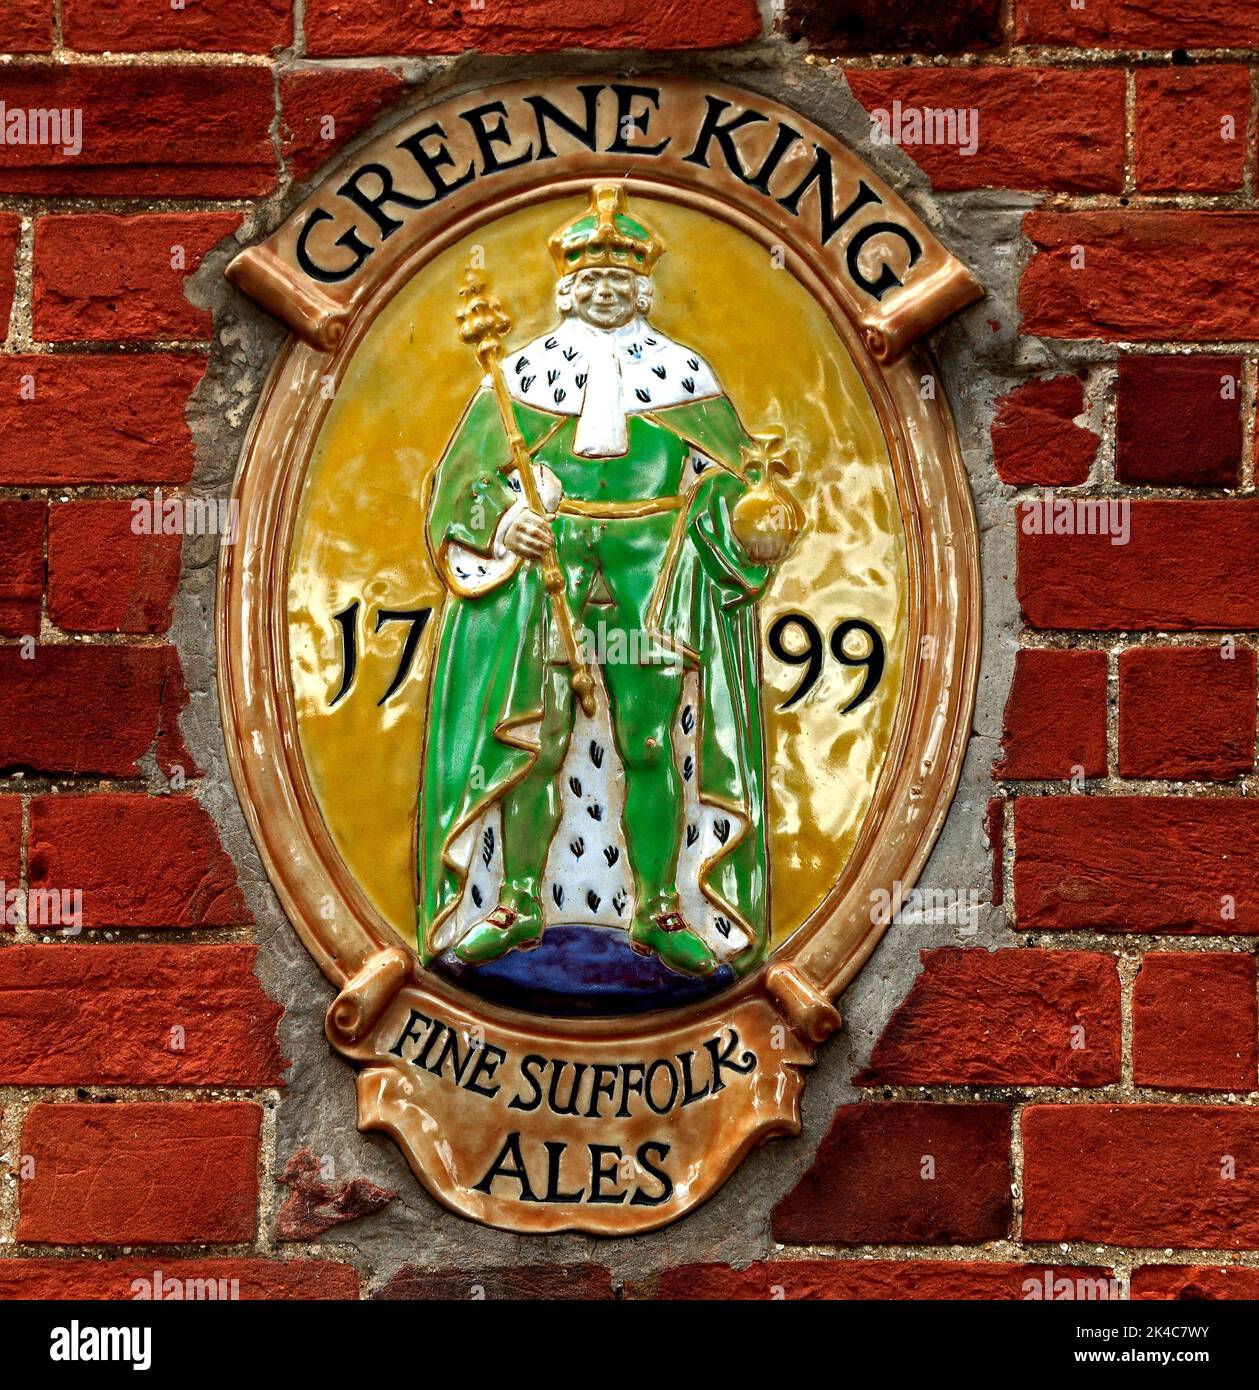 Plaque de la brasserie Greene King, Castle Acre, Norfolk, Angleterre, Royaume-Uni Banque D'Images